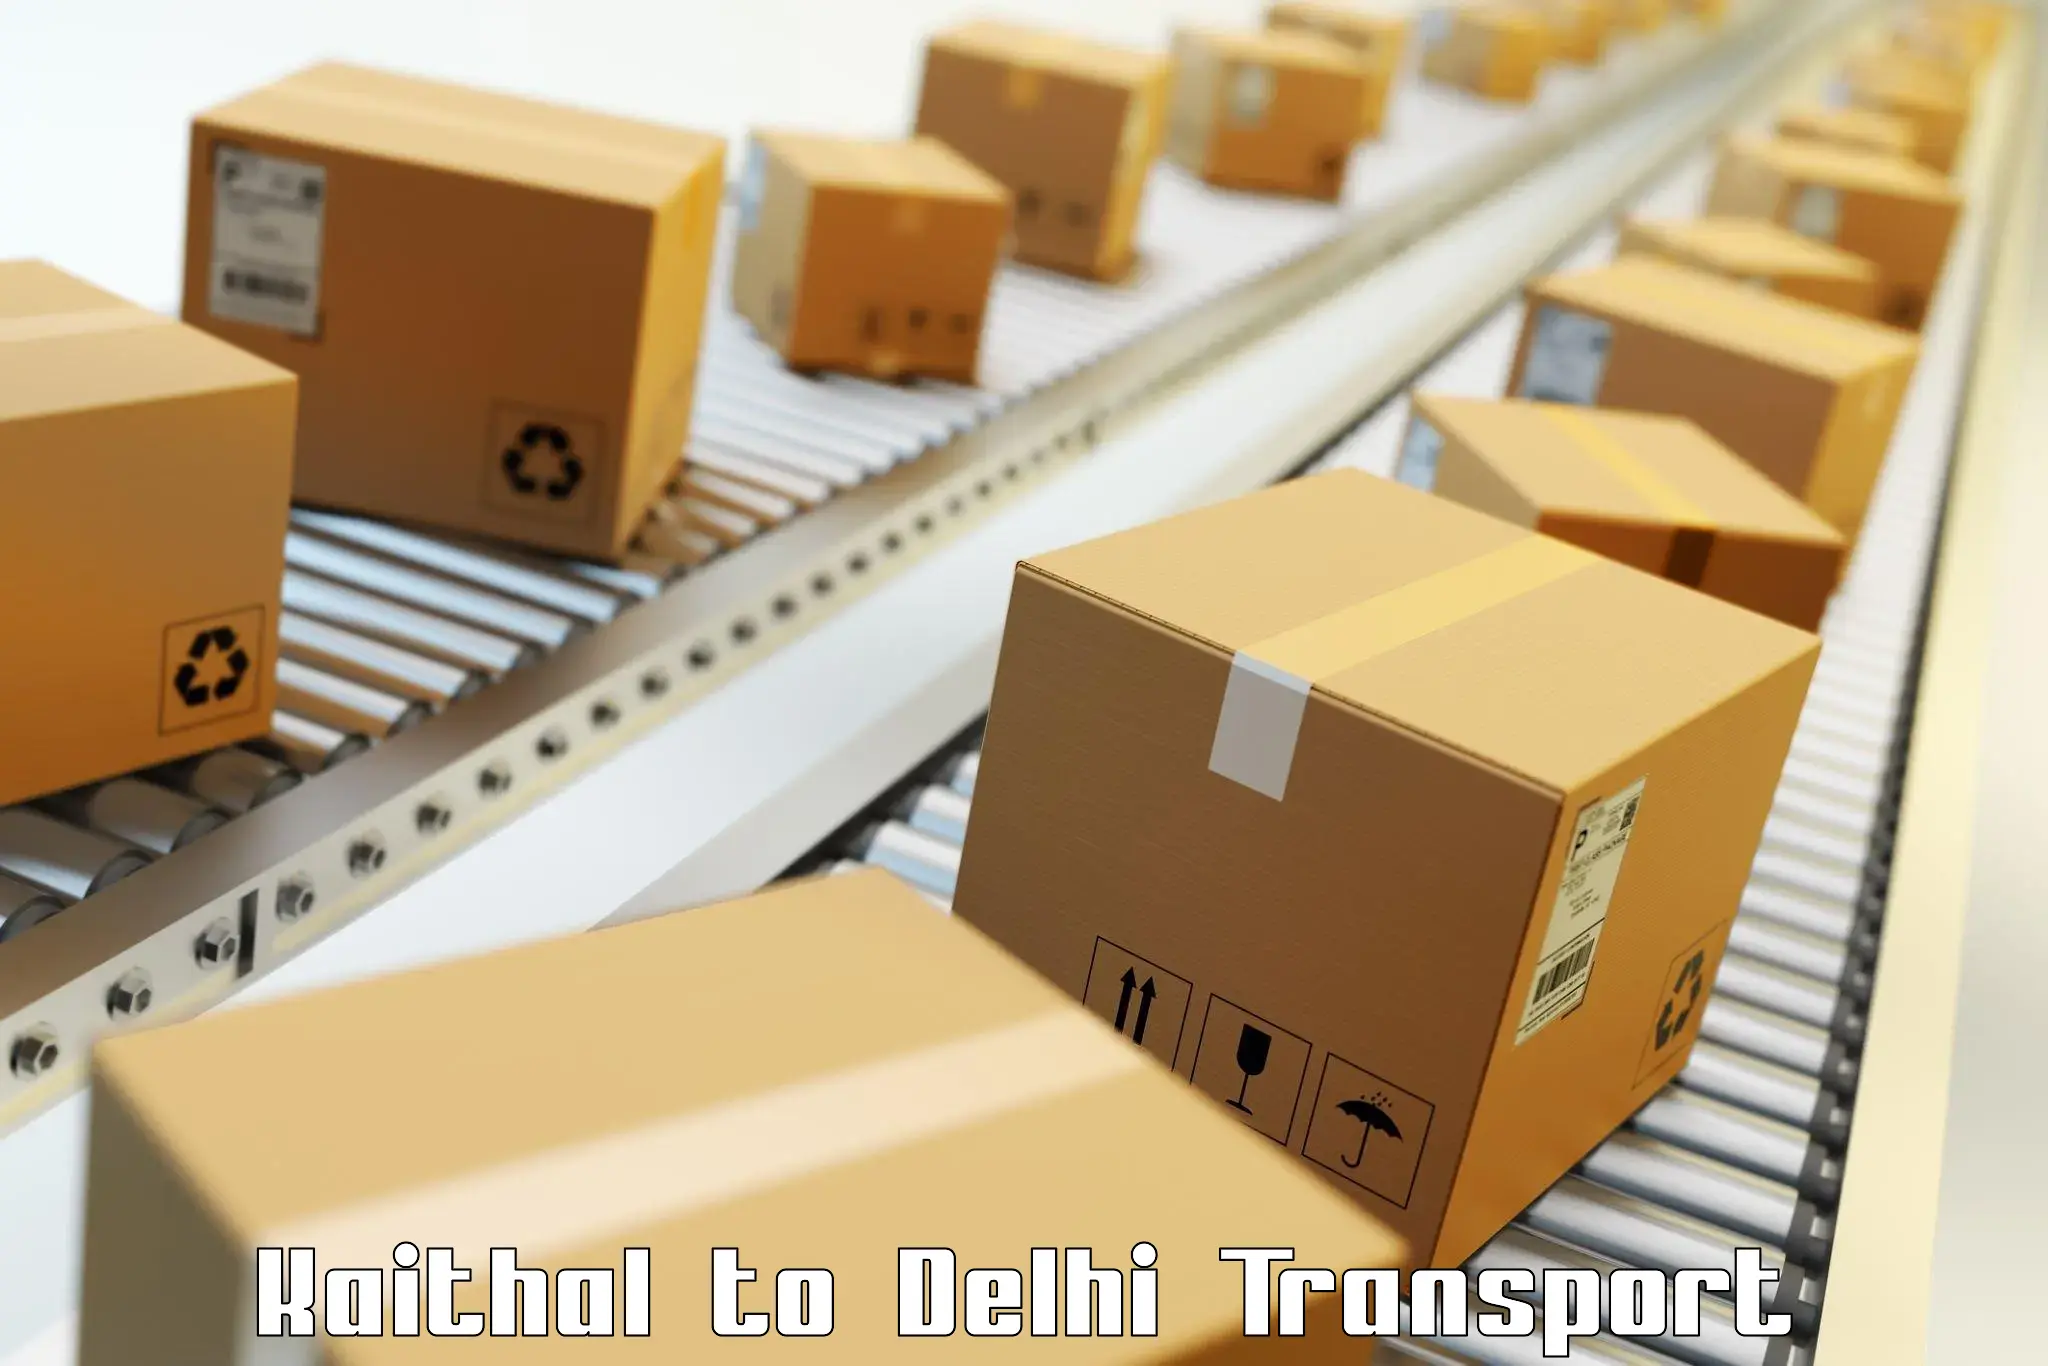 Shipping services Kaithal to Jamia Millia Islamia New Delhi